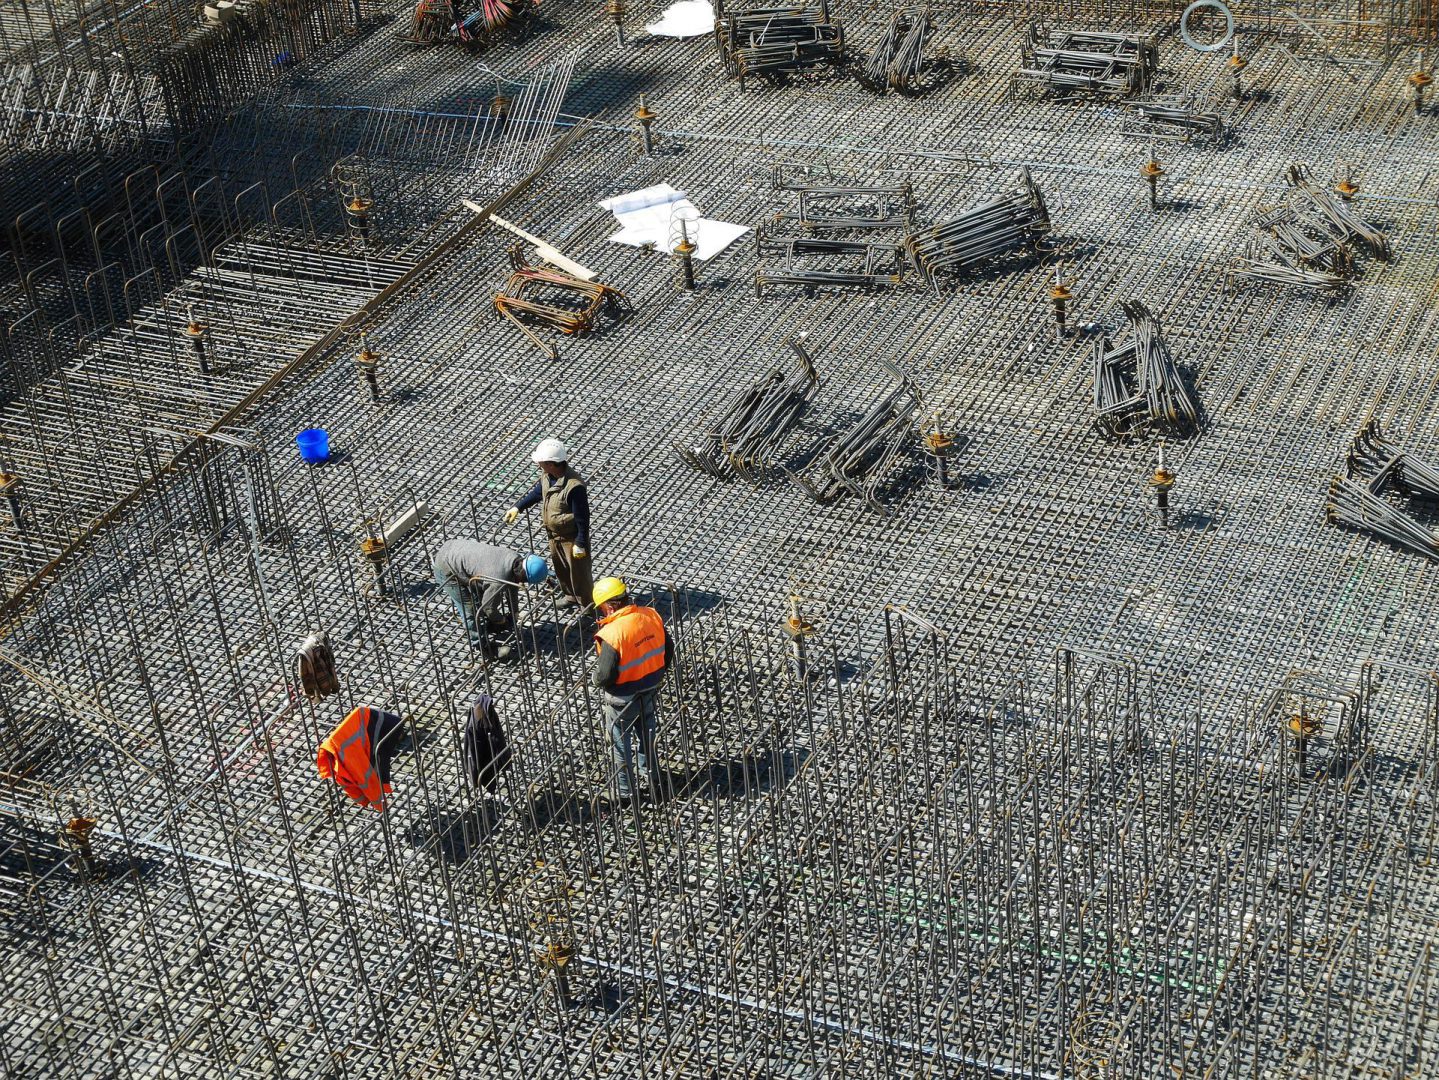 construction site crane